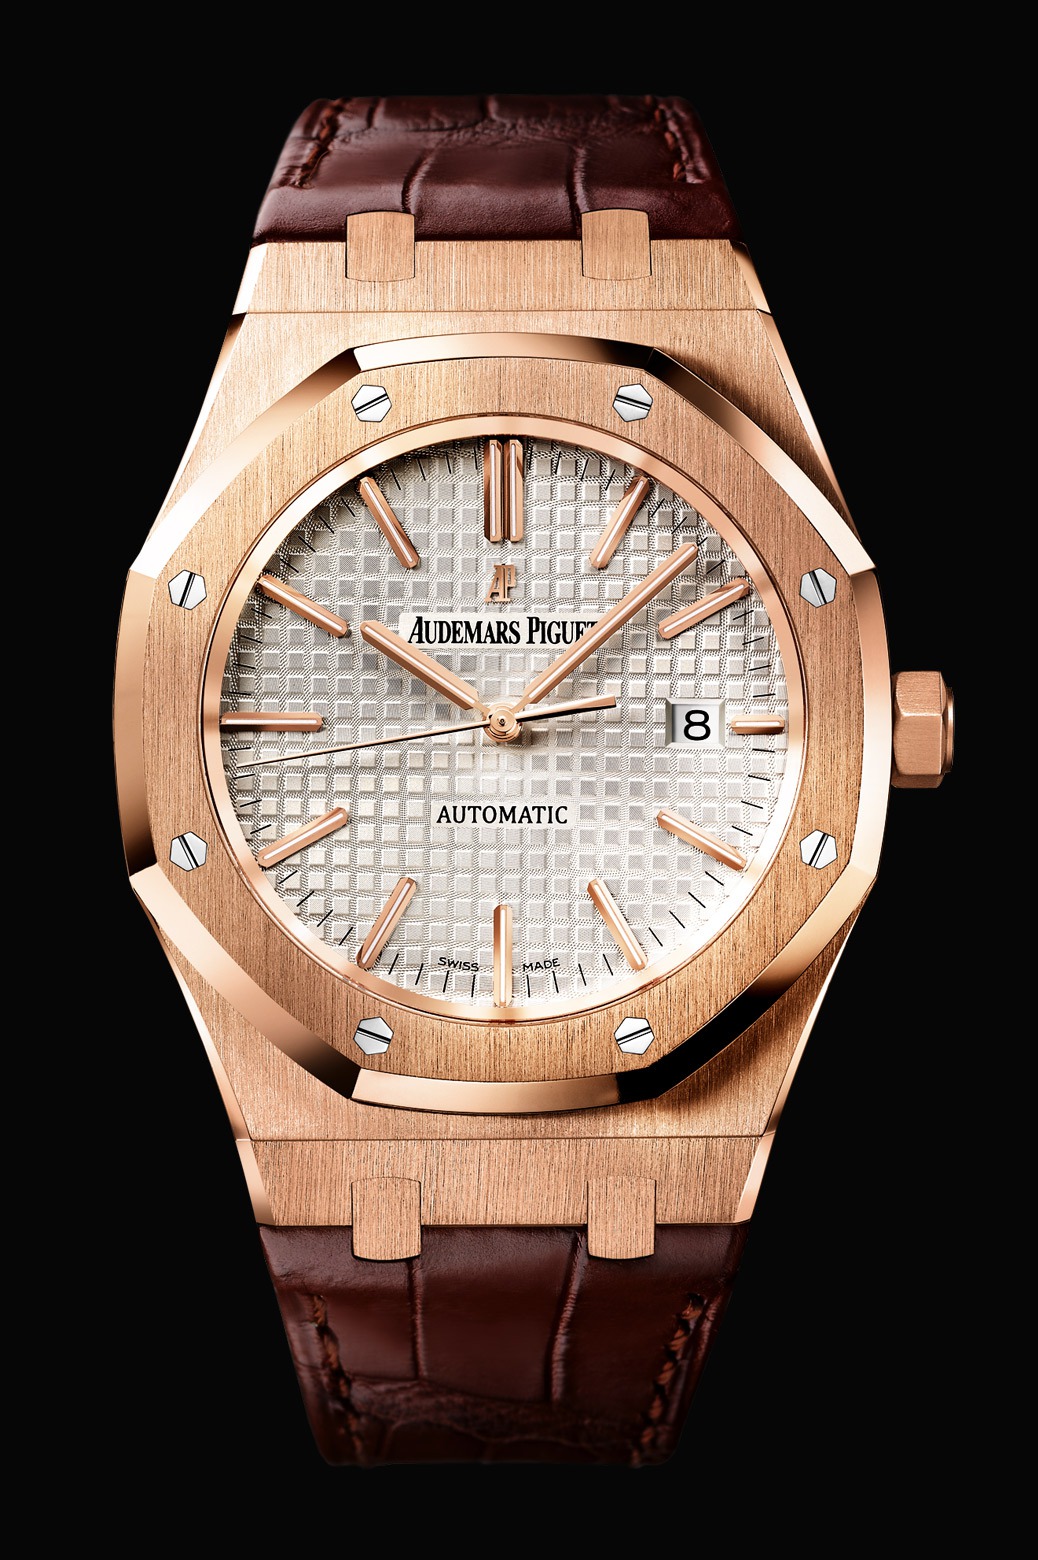 Audemars Piguet Royal Oak Automatic Pink Gold watch REF: 15400OR.OO.D088CR.01